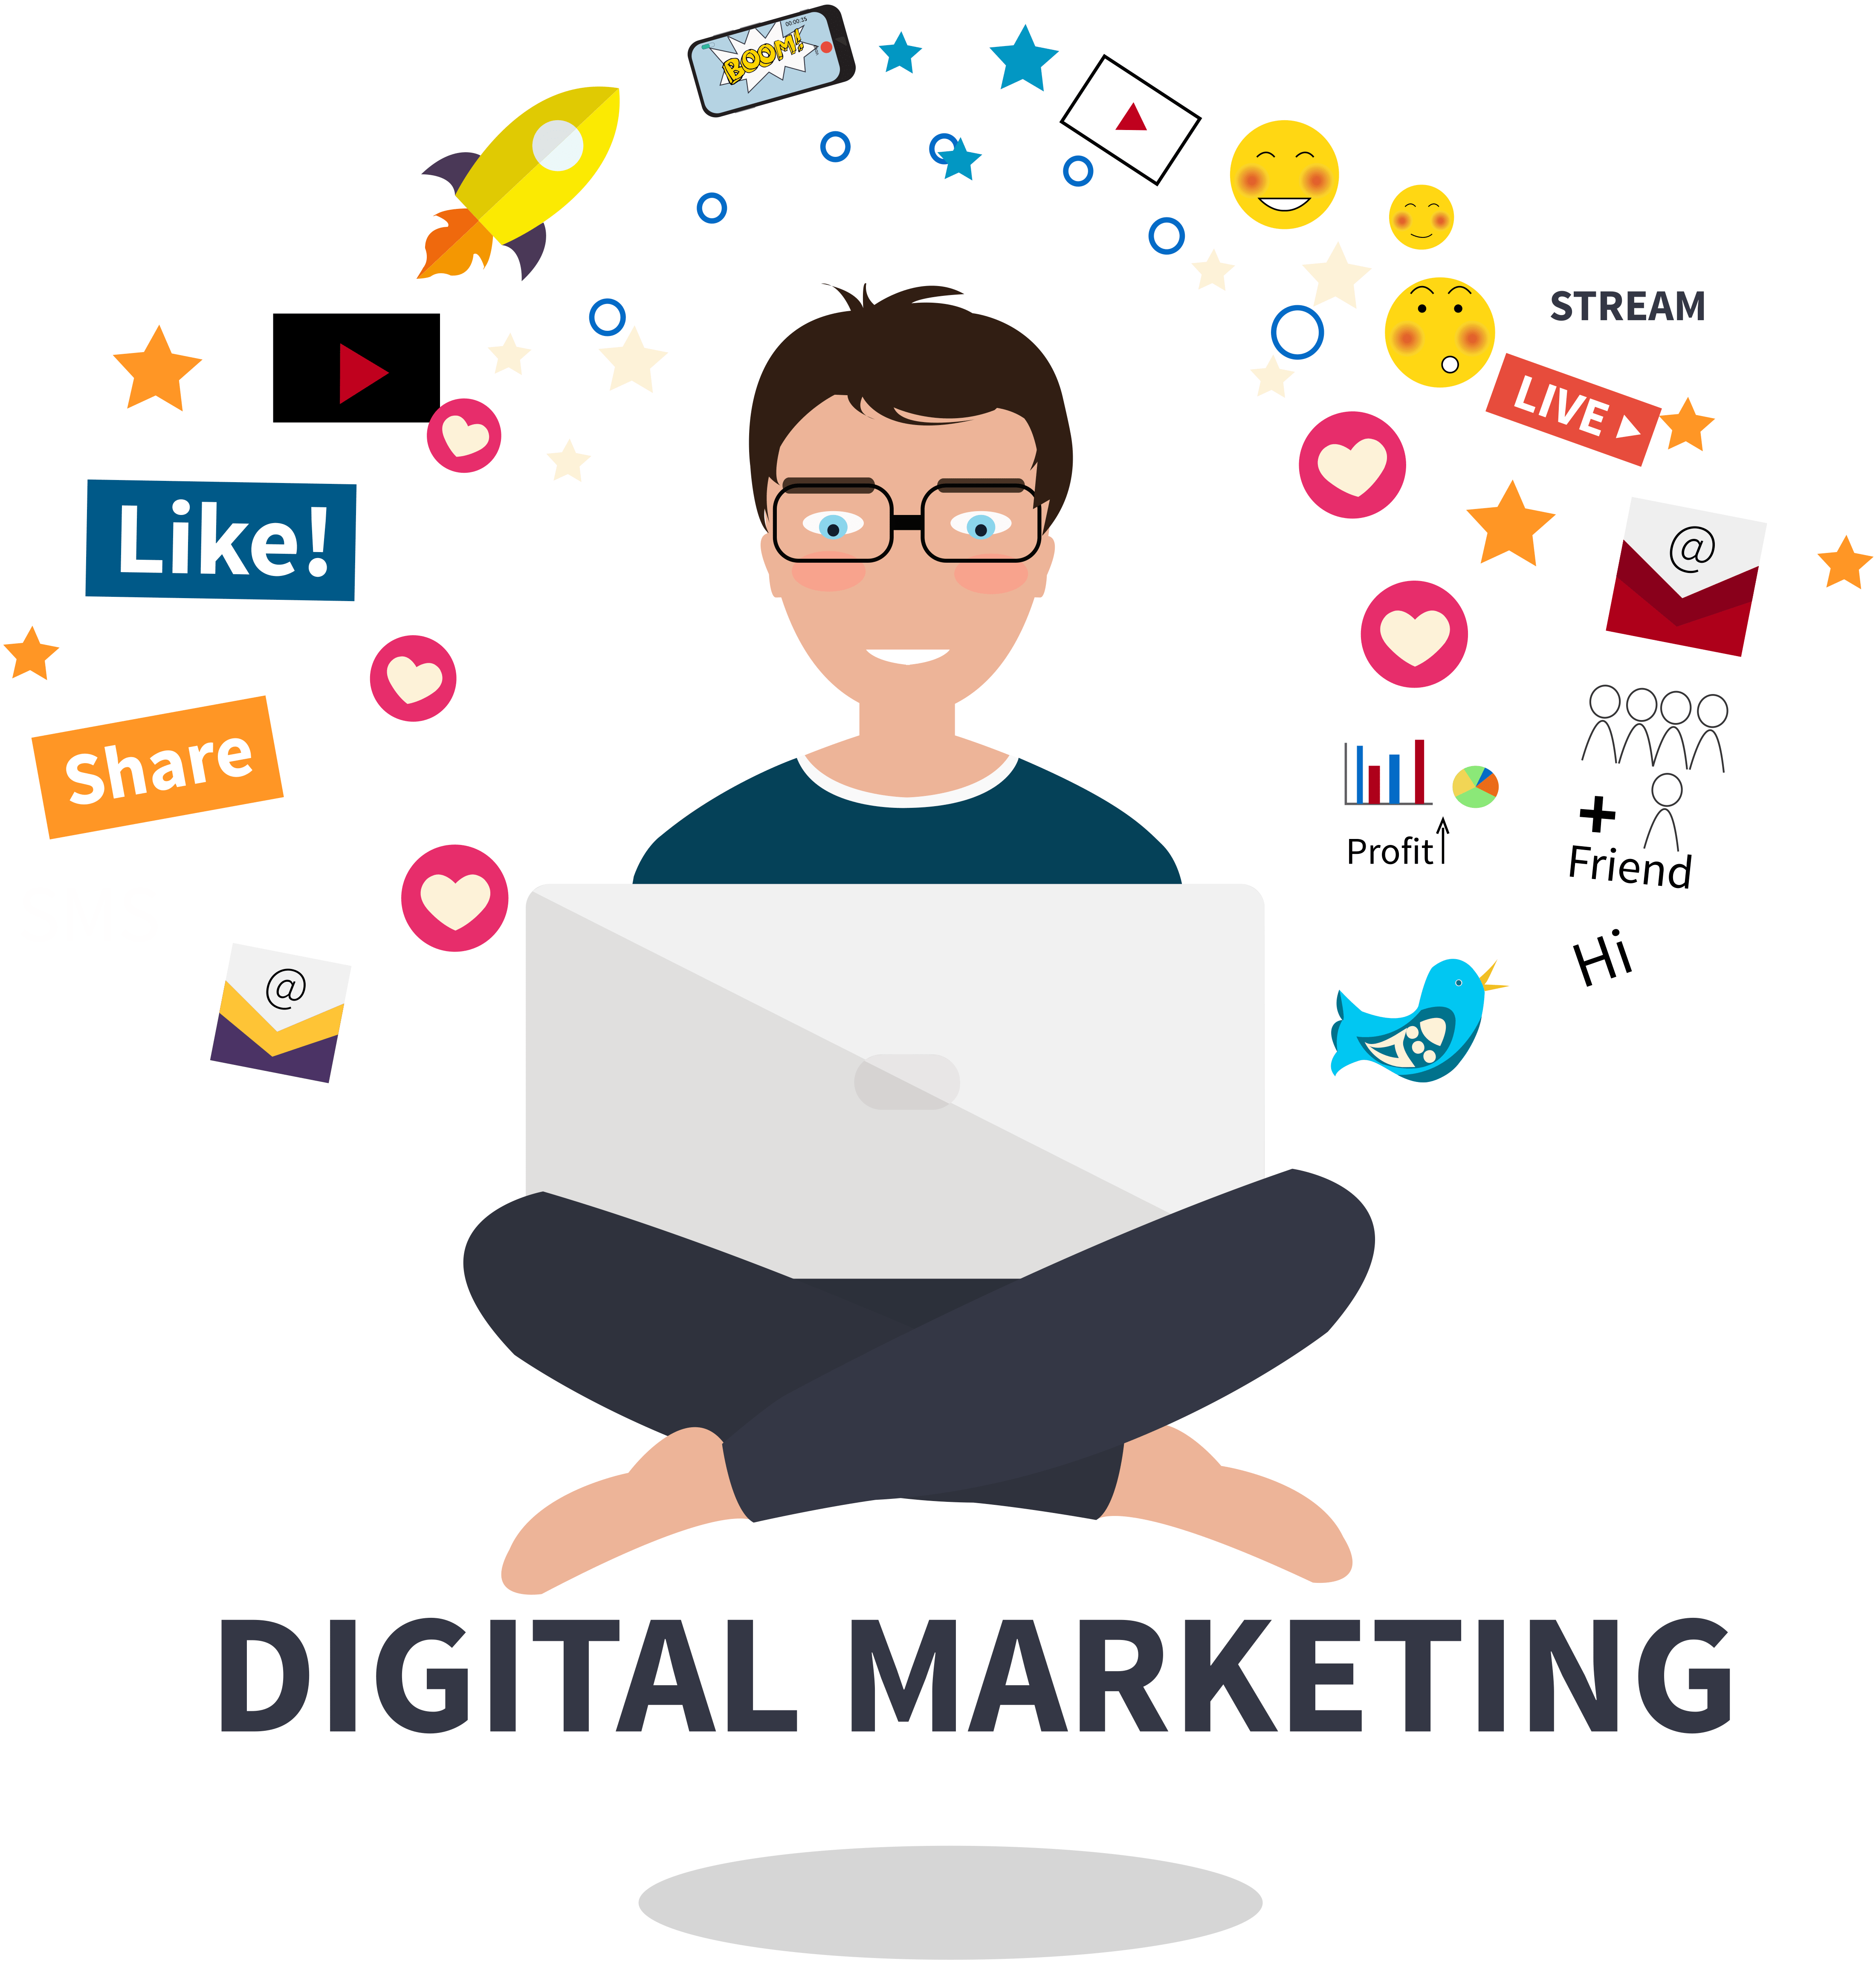 digital-marketing-is-hard-1-min.png